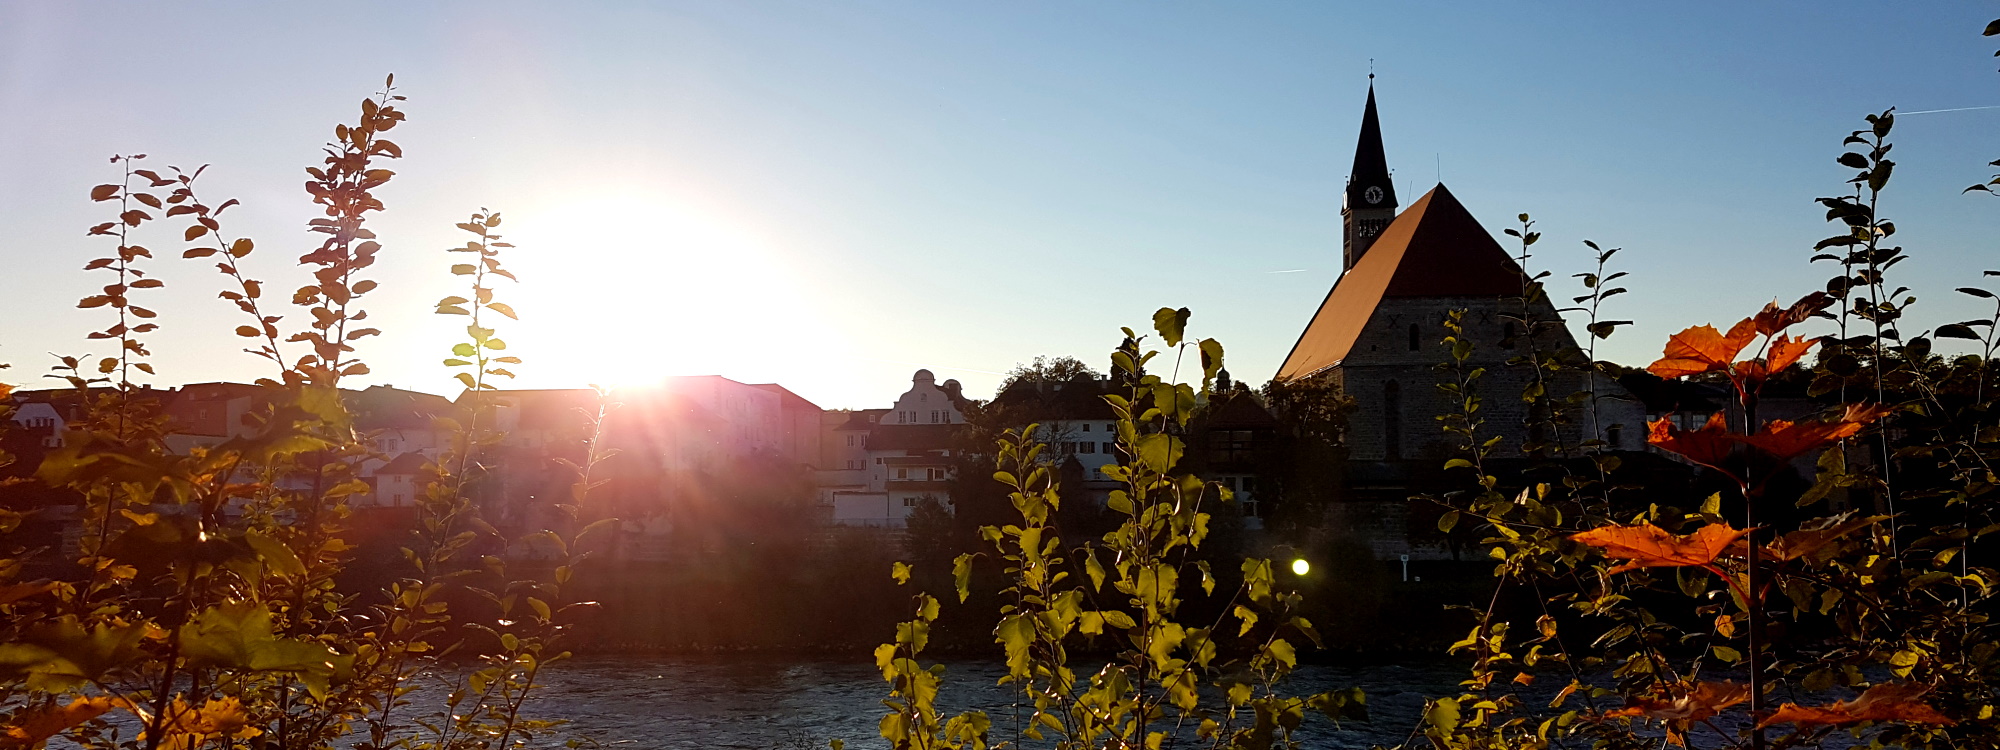 Gegenlichtaufnahme der Altstadtsilhouette von Laufen mit Stiftskirche und Sträuchern im Vordergrund